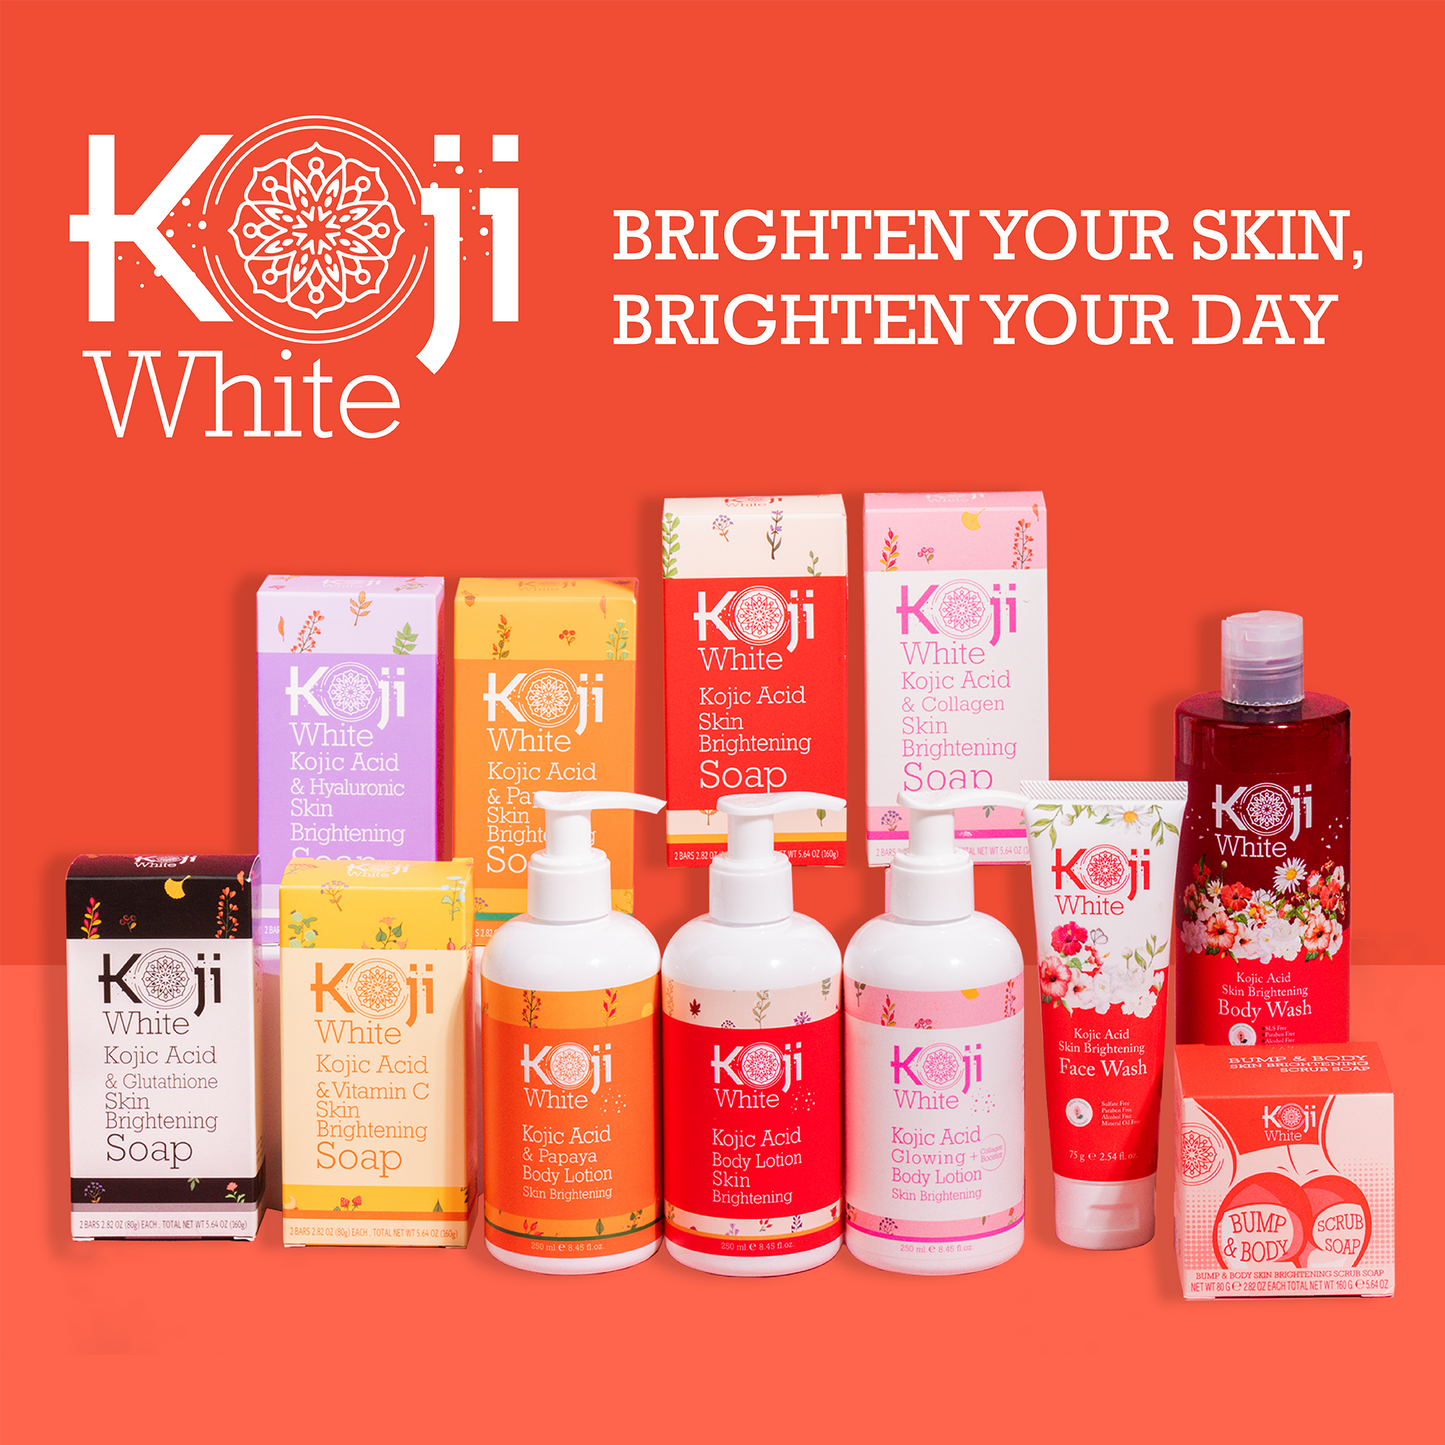 Koji White: Brighten your skin, brighten your day